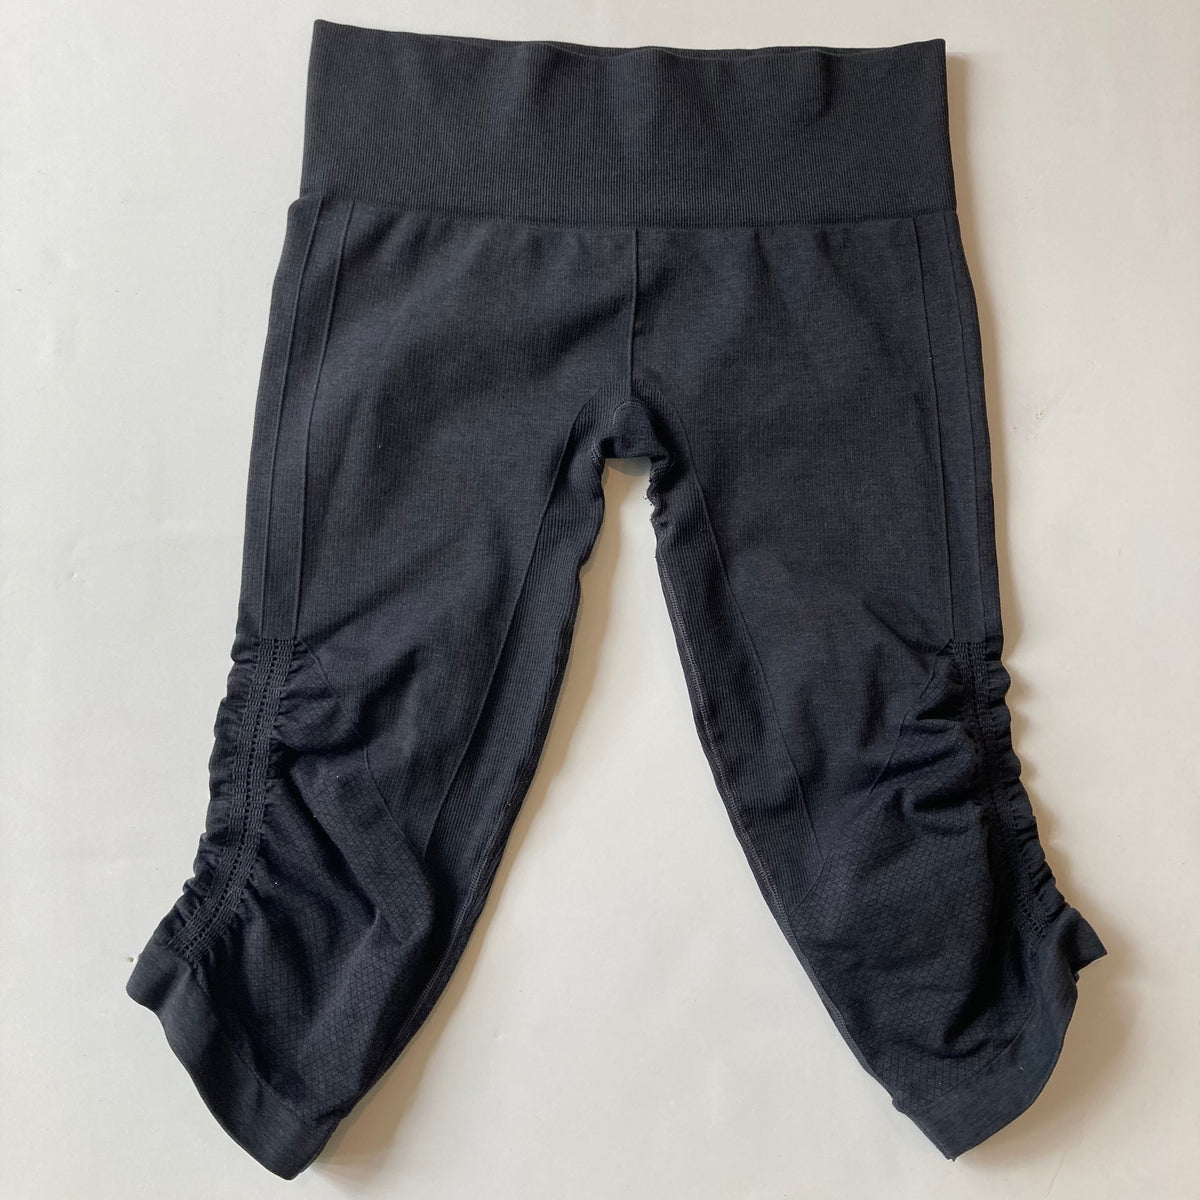 Lululemon capri gray leggings ( 8 ) - $30 - From Melissa